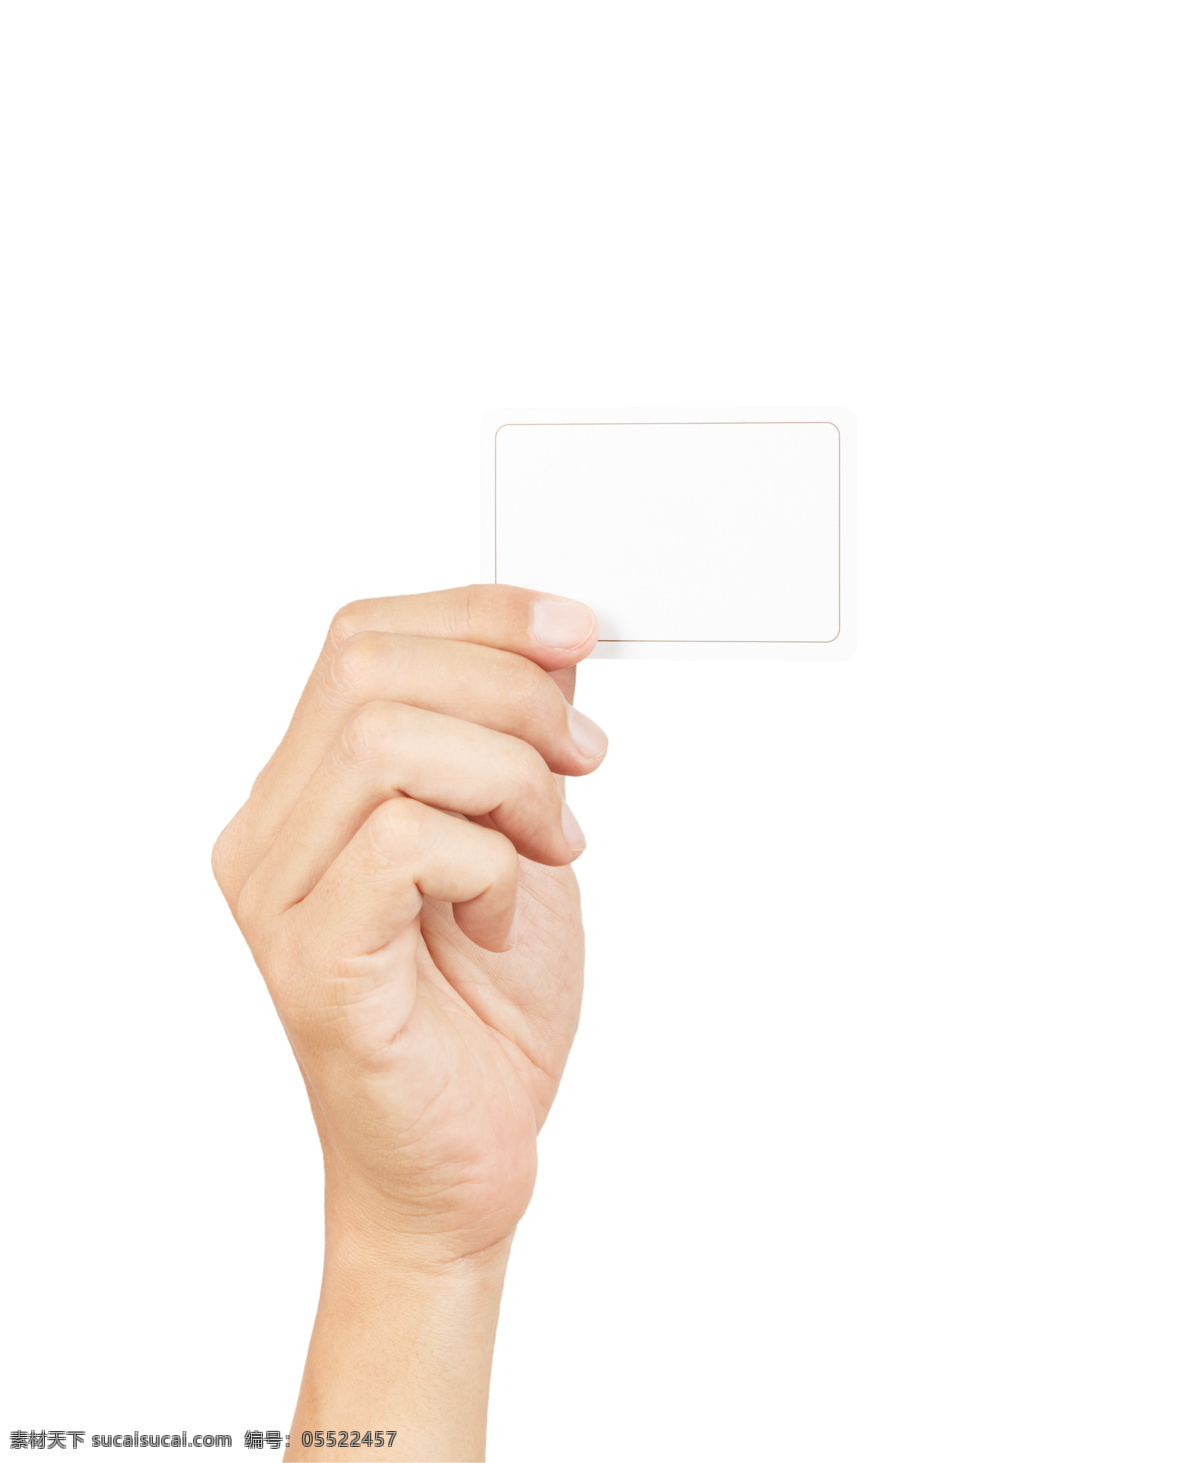 名片 展示 人物 高清 手 空白 拿着名片的手 卡片手势展示 背景空白名片 其它人物 人物图片 白色